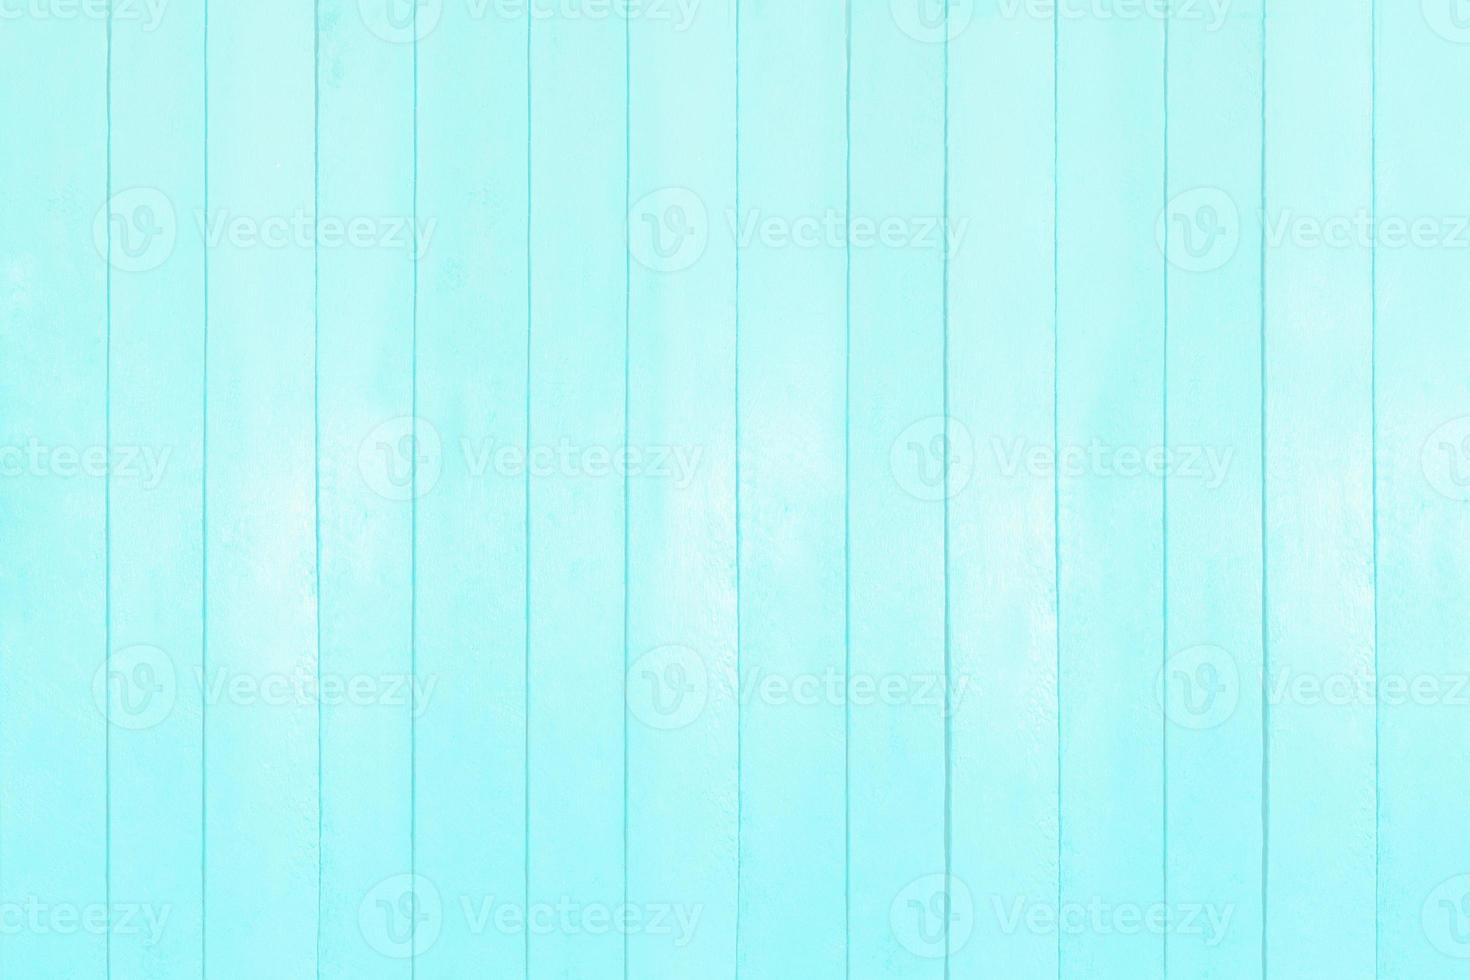 tableros de color azul claro con reflejos, fondo marino. verano primavera. copie el espacio foto